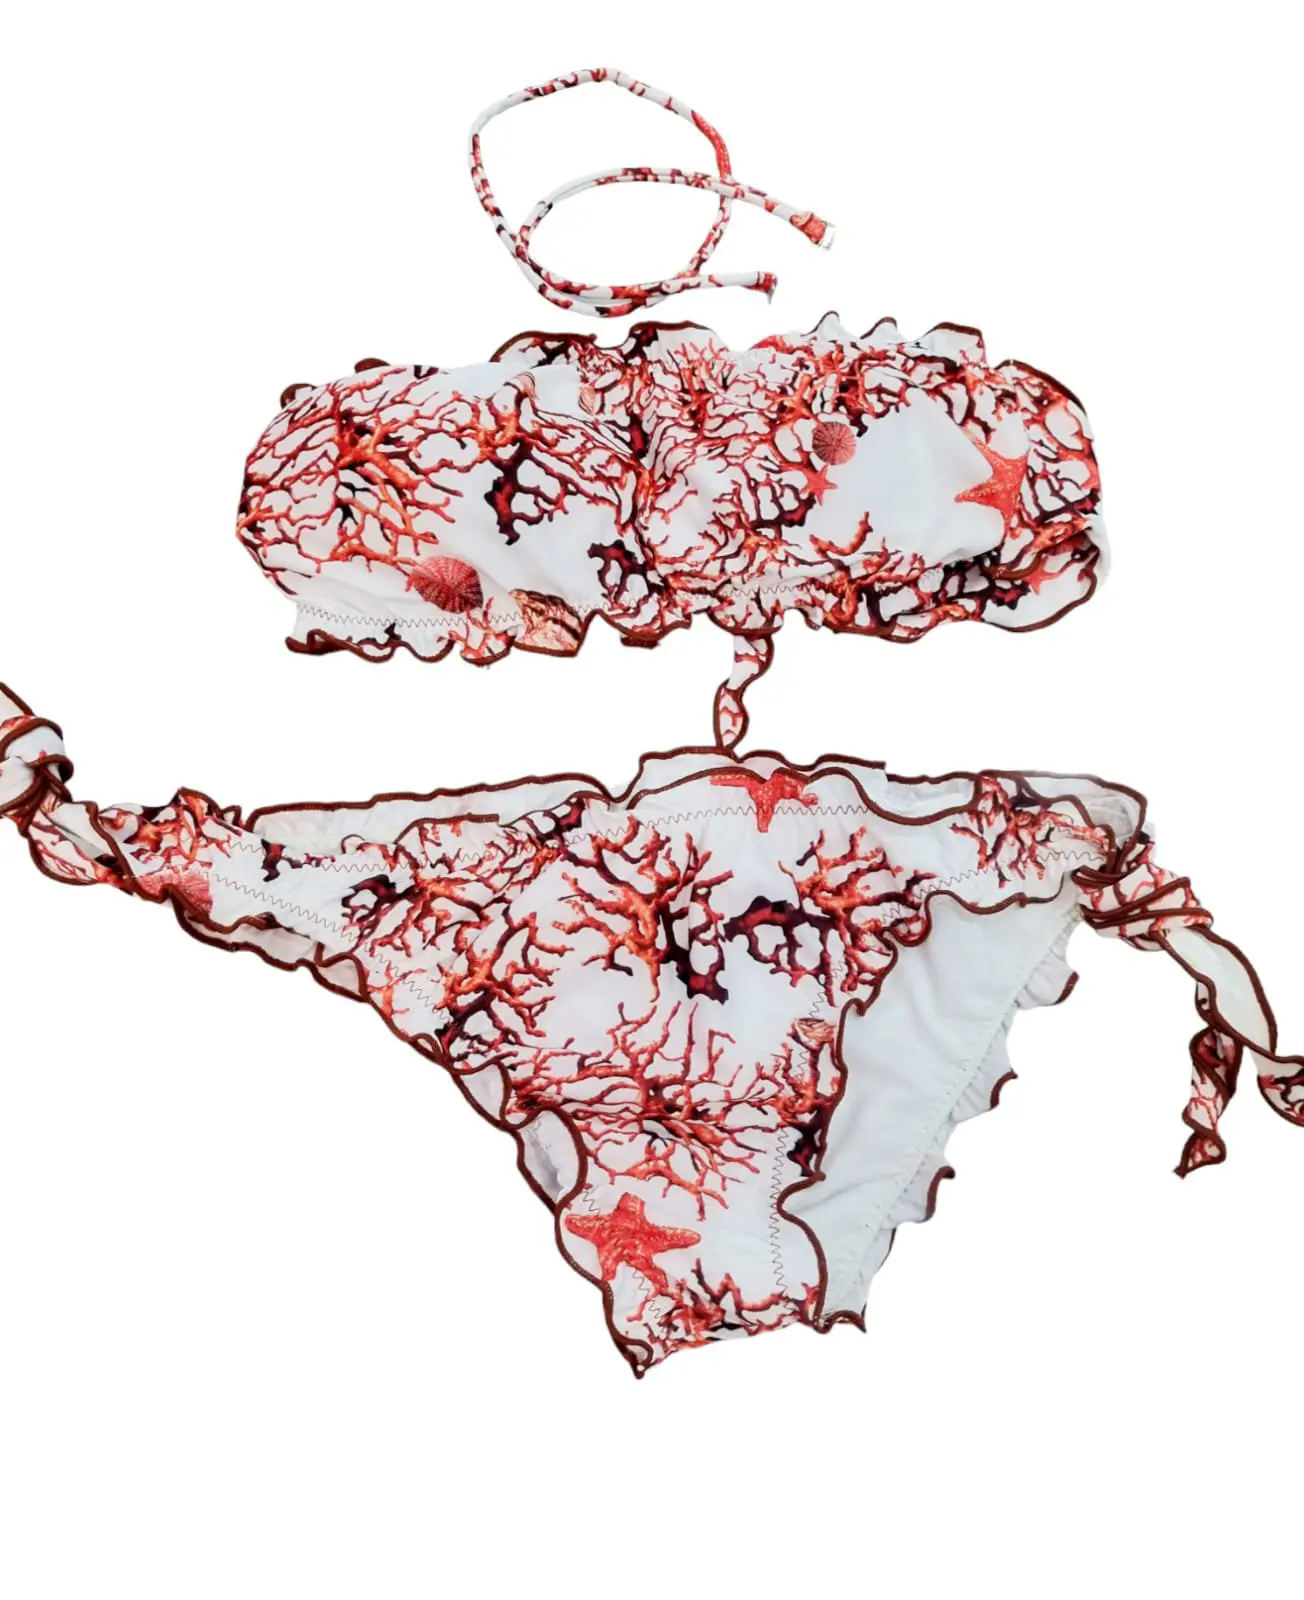 Gepolsterter Bandeau-Bikini, Möglichkeit zum Anbringen eines Trägers, verstellbarer Slip mit rotem Korallenmuster